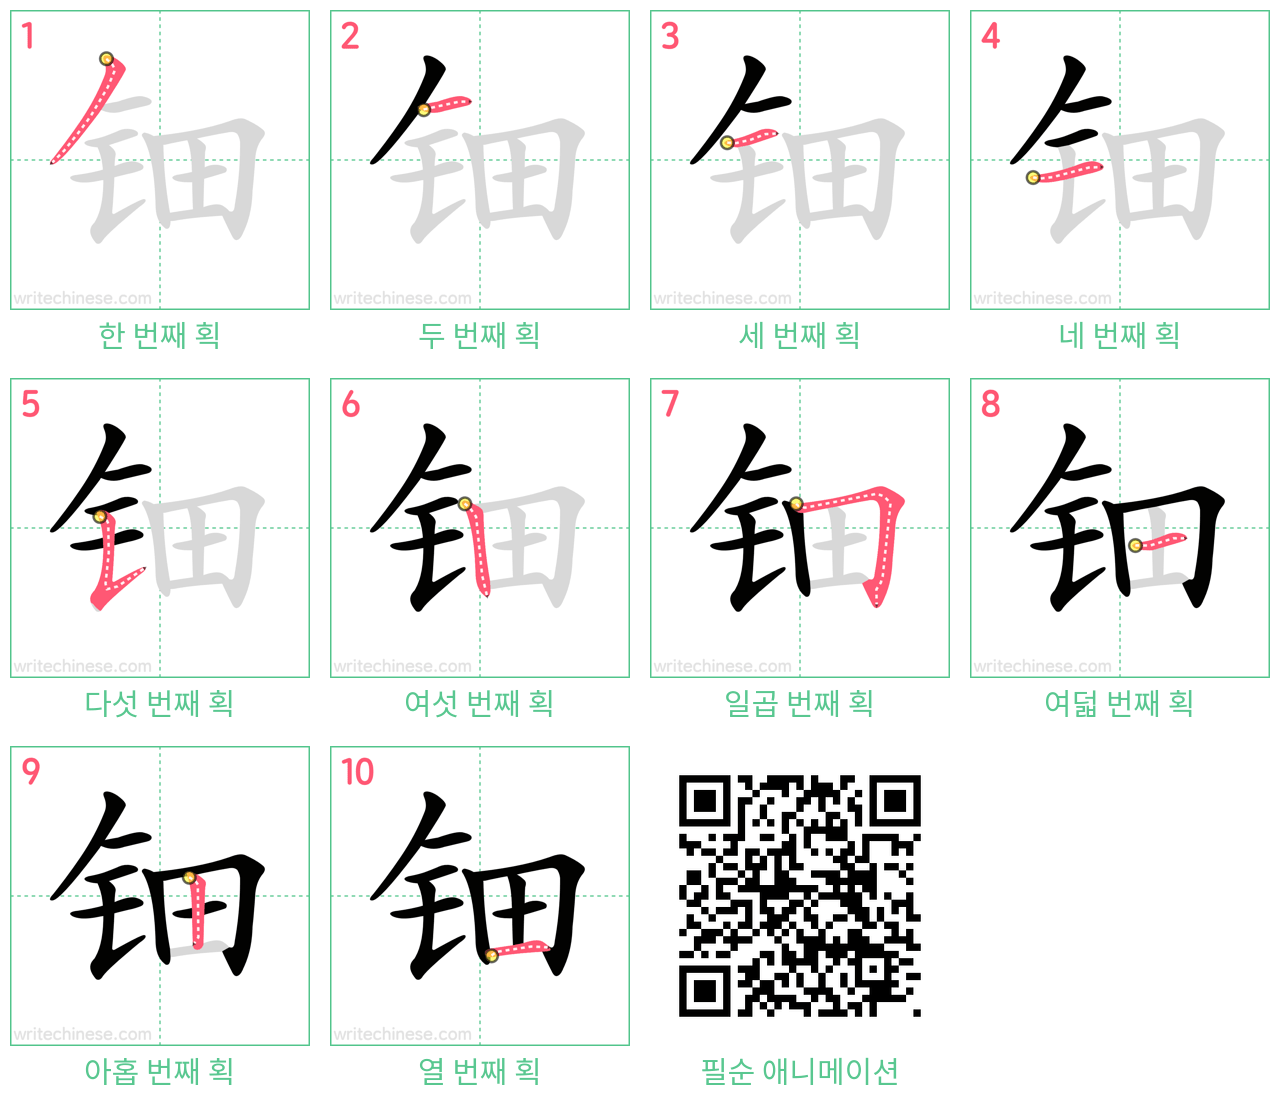 钿 step-by-step stroke order diagrams